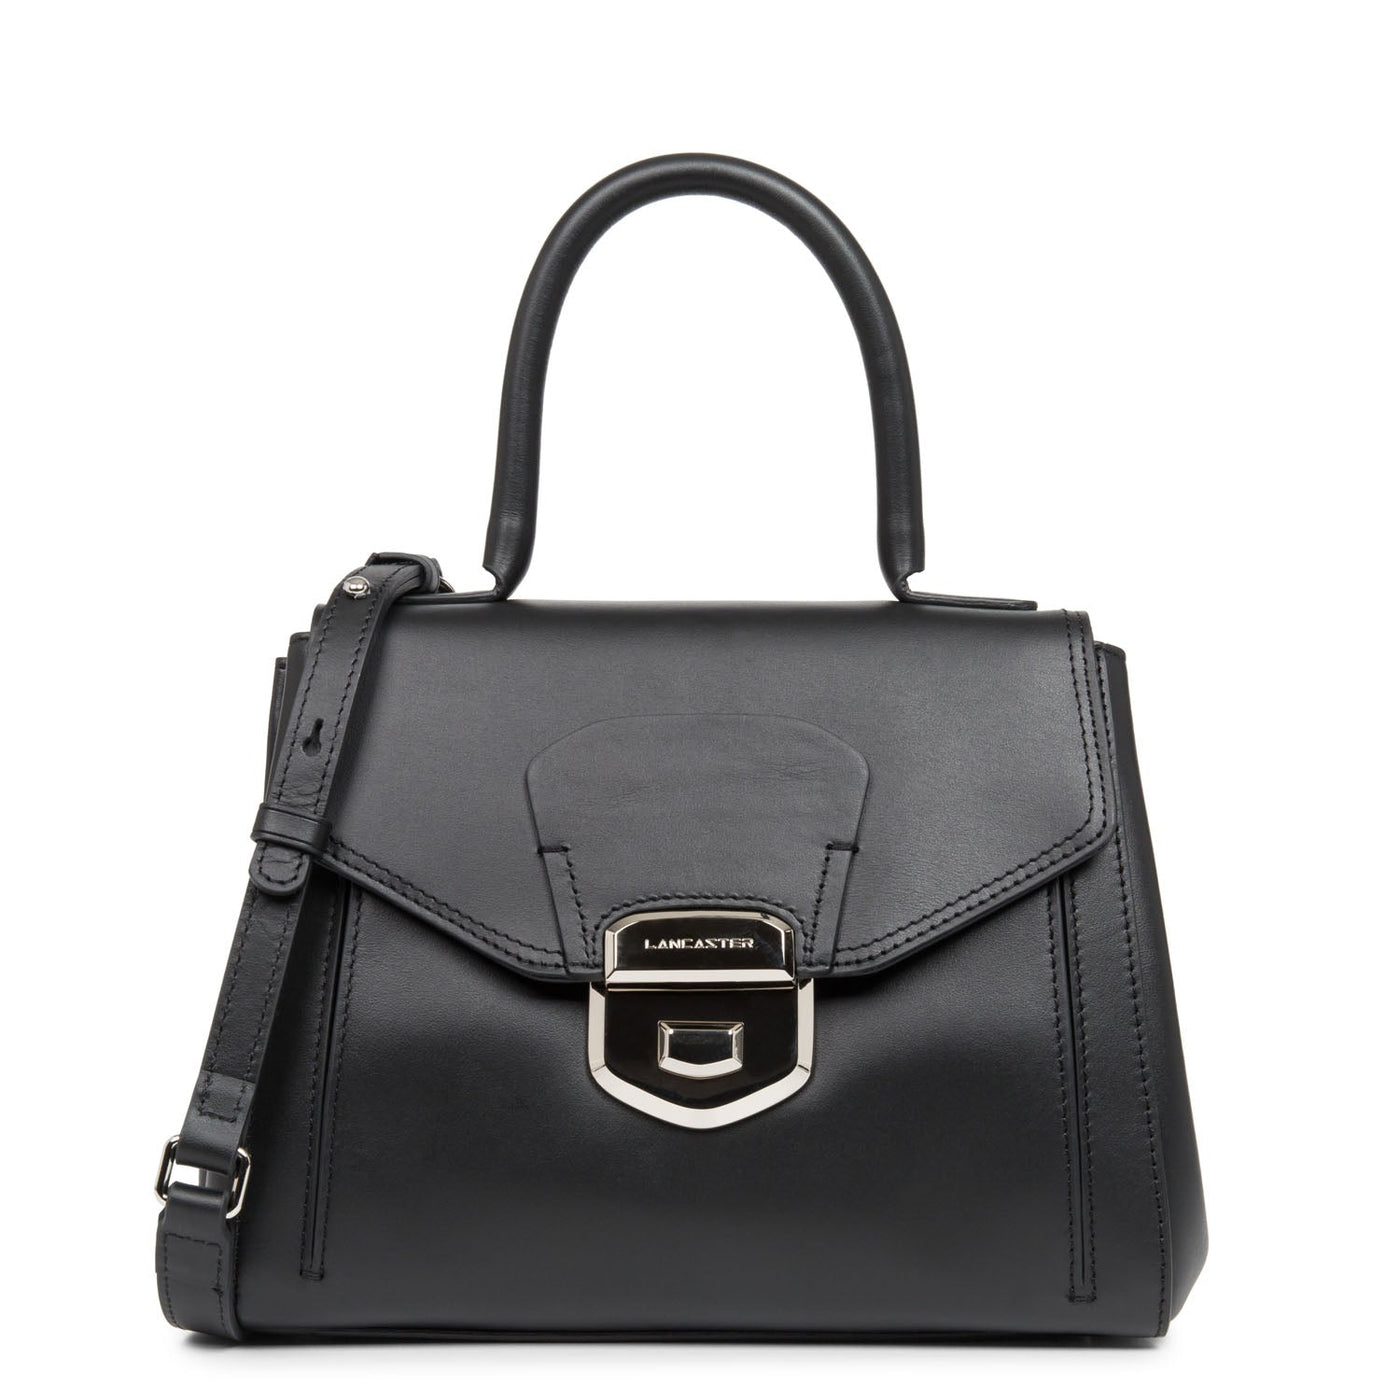 handbag - parisienne sophia #couleur_noir